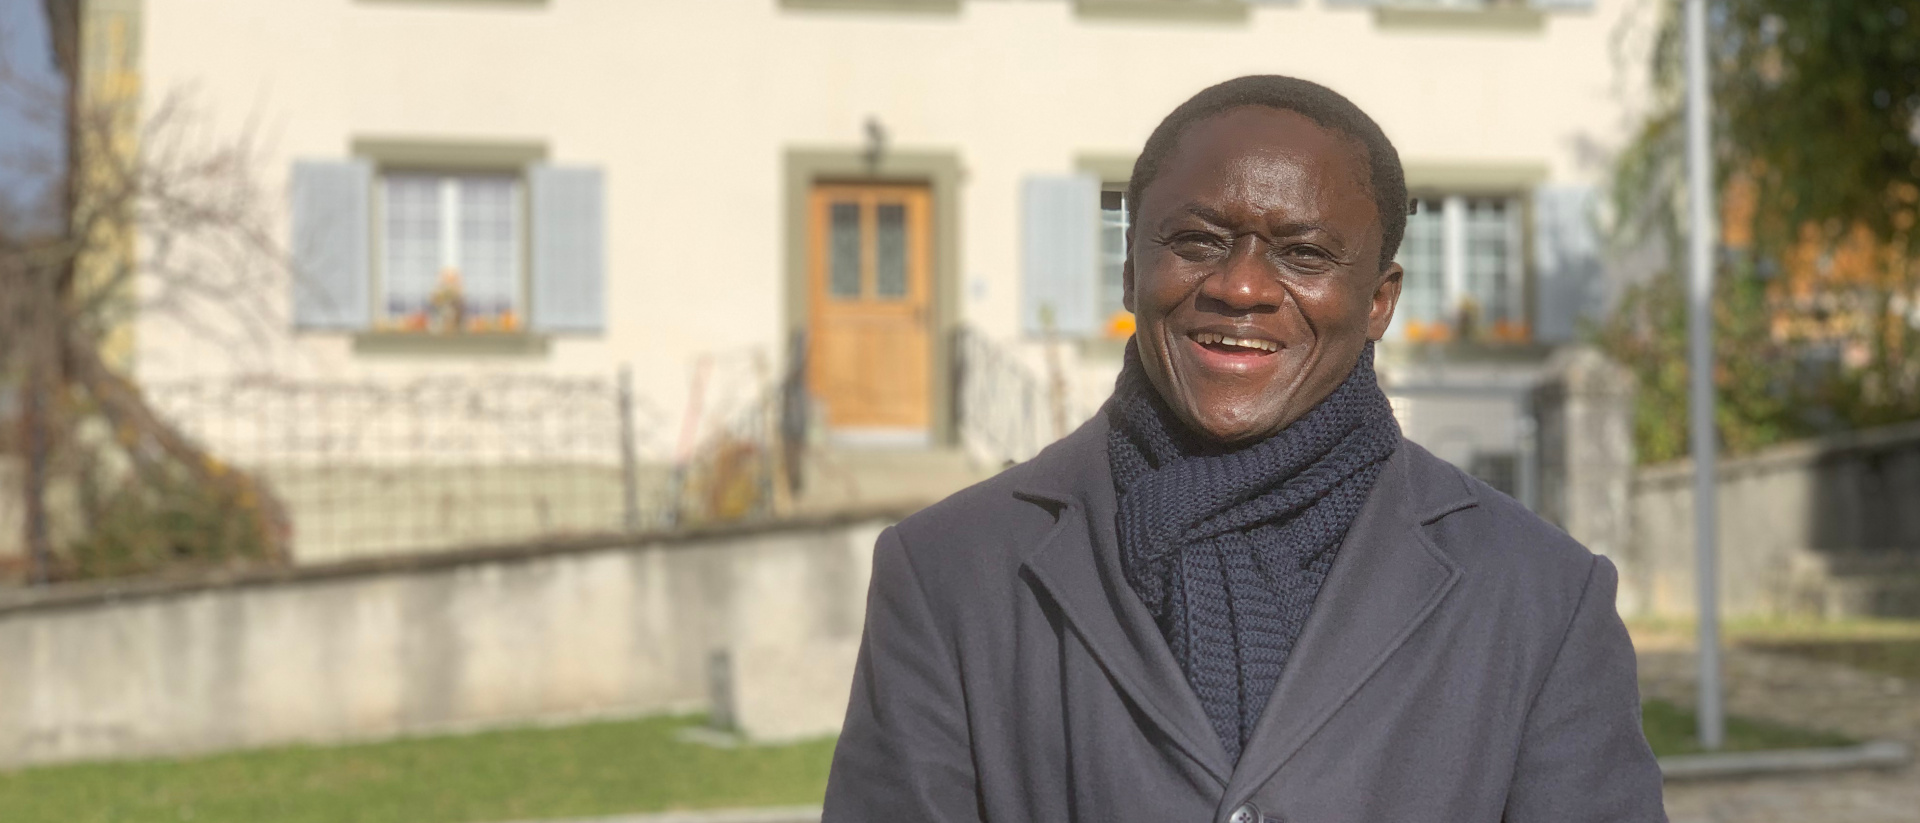 André Ouedraogo ist Priester in Gurmels im Kanton Fribourg und stammt ursprünglich aus Burkina Faso.